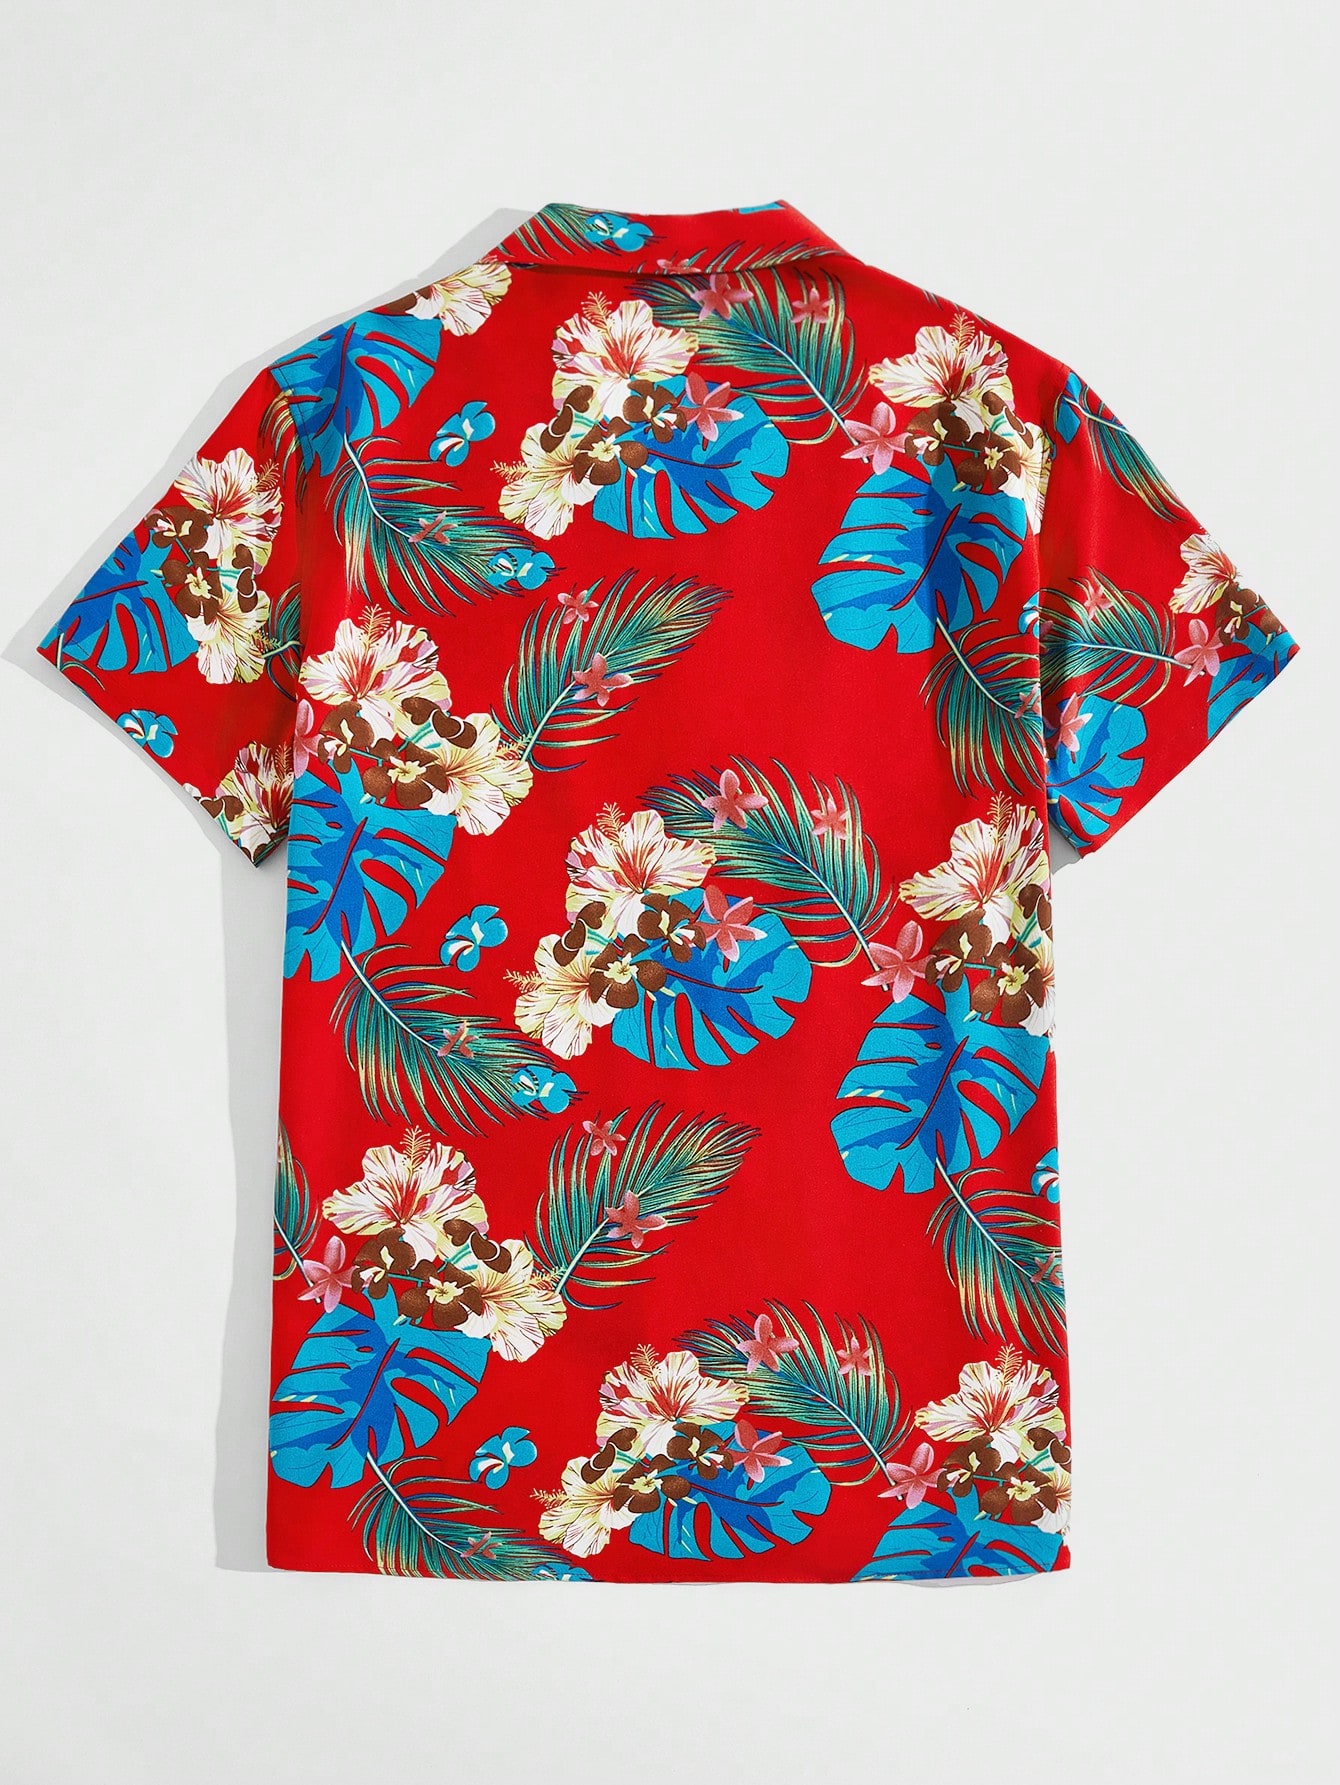 Мужская тканая рубашка с короткими рукавами и принтом тропических растений Manfinity RSRT, красный рубашка с короткими рукавами и цветочным принтом y a s оранжевый